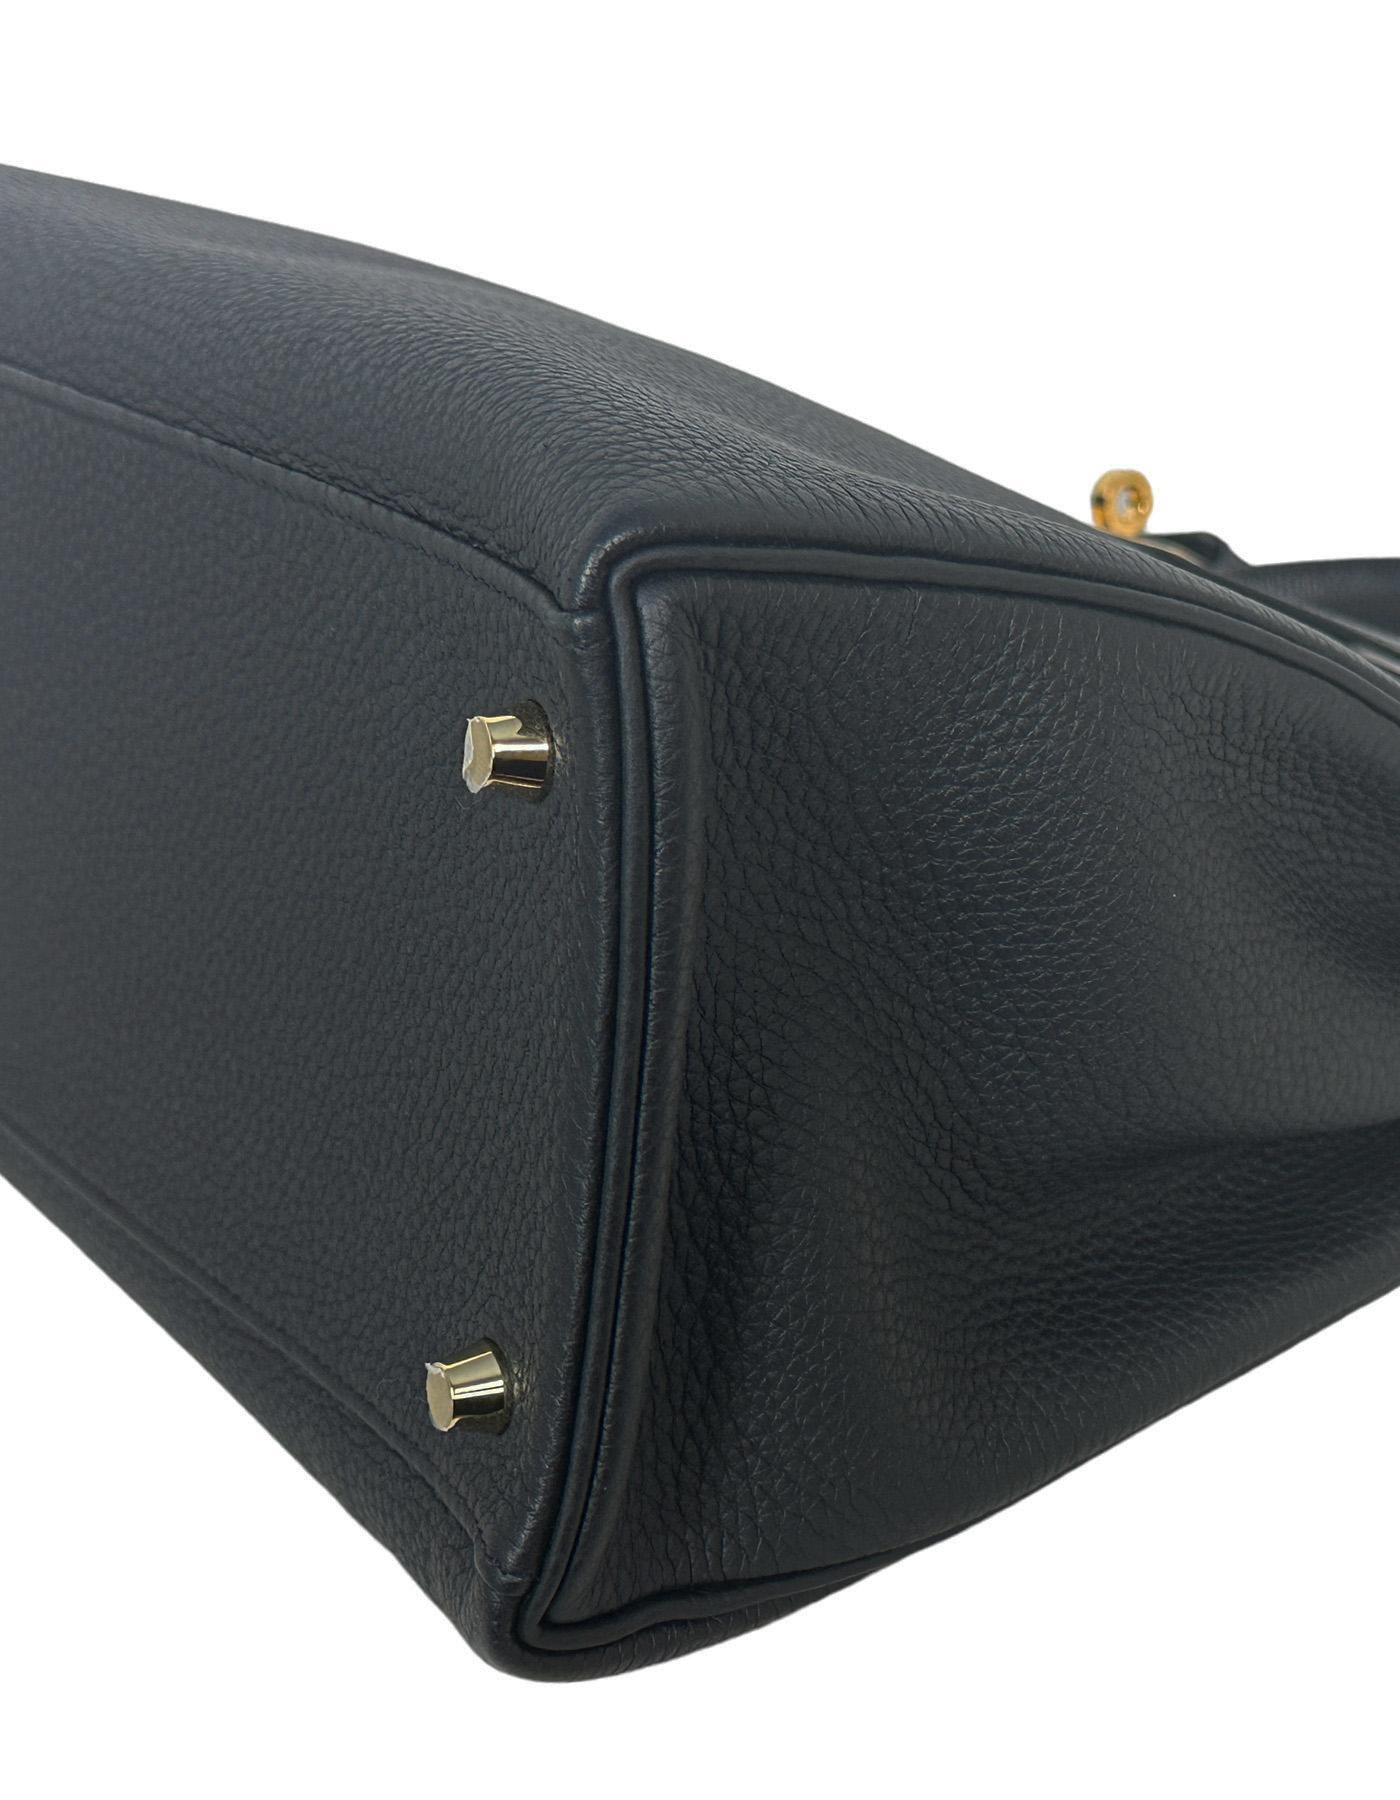 Hermes Black Togo Leather Retourne 35cm Kelly Bag w/ GHW 3